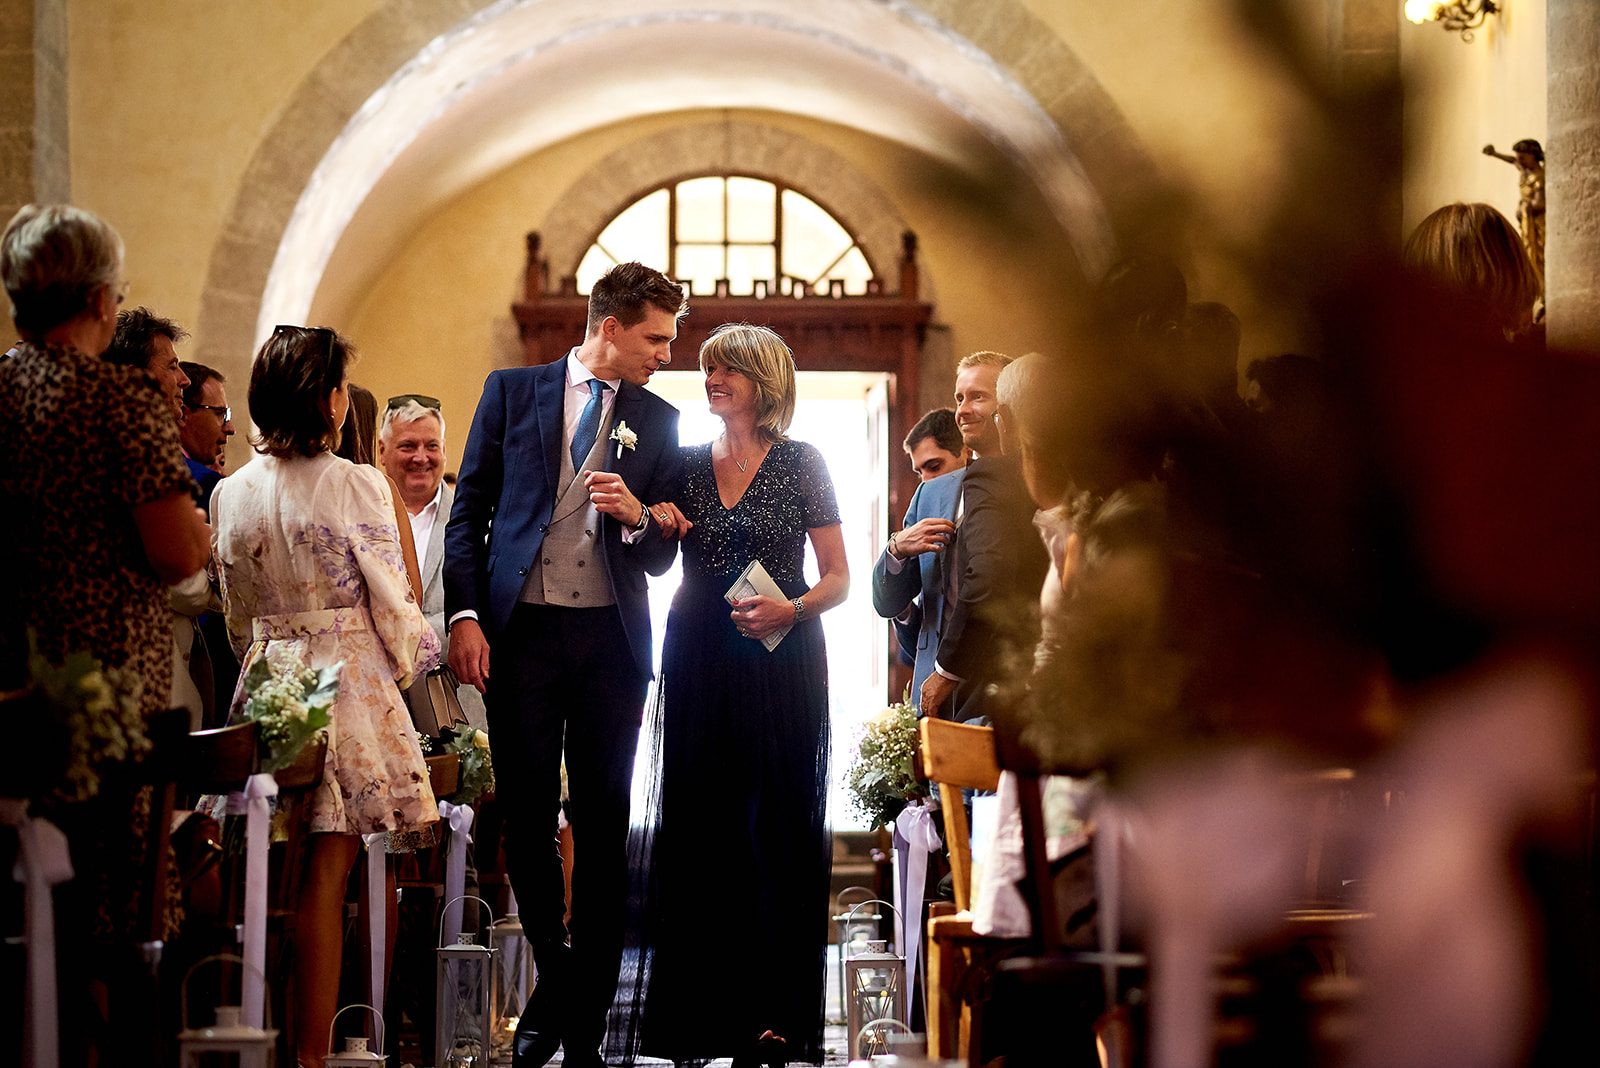 Organisation de mariage romantique chic - Hera Mariage Wedding Planner - Auvergne - Puy de Dôme - Clermont-Ferrand - Allier - Haute-Loire - Cantal